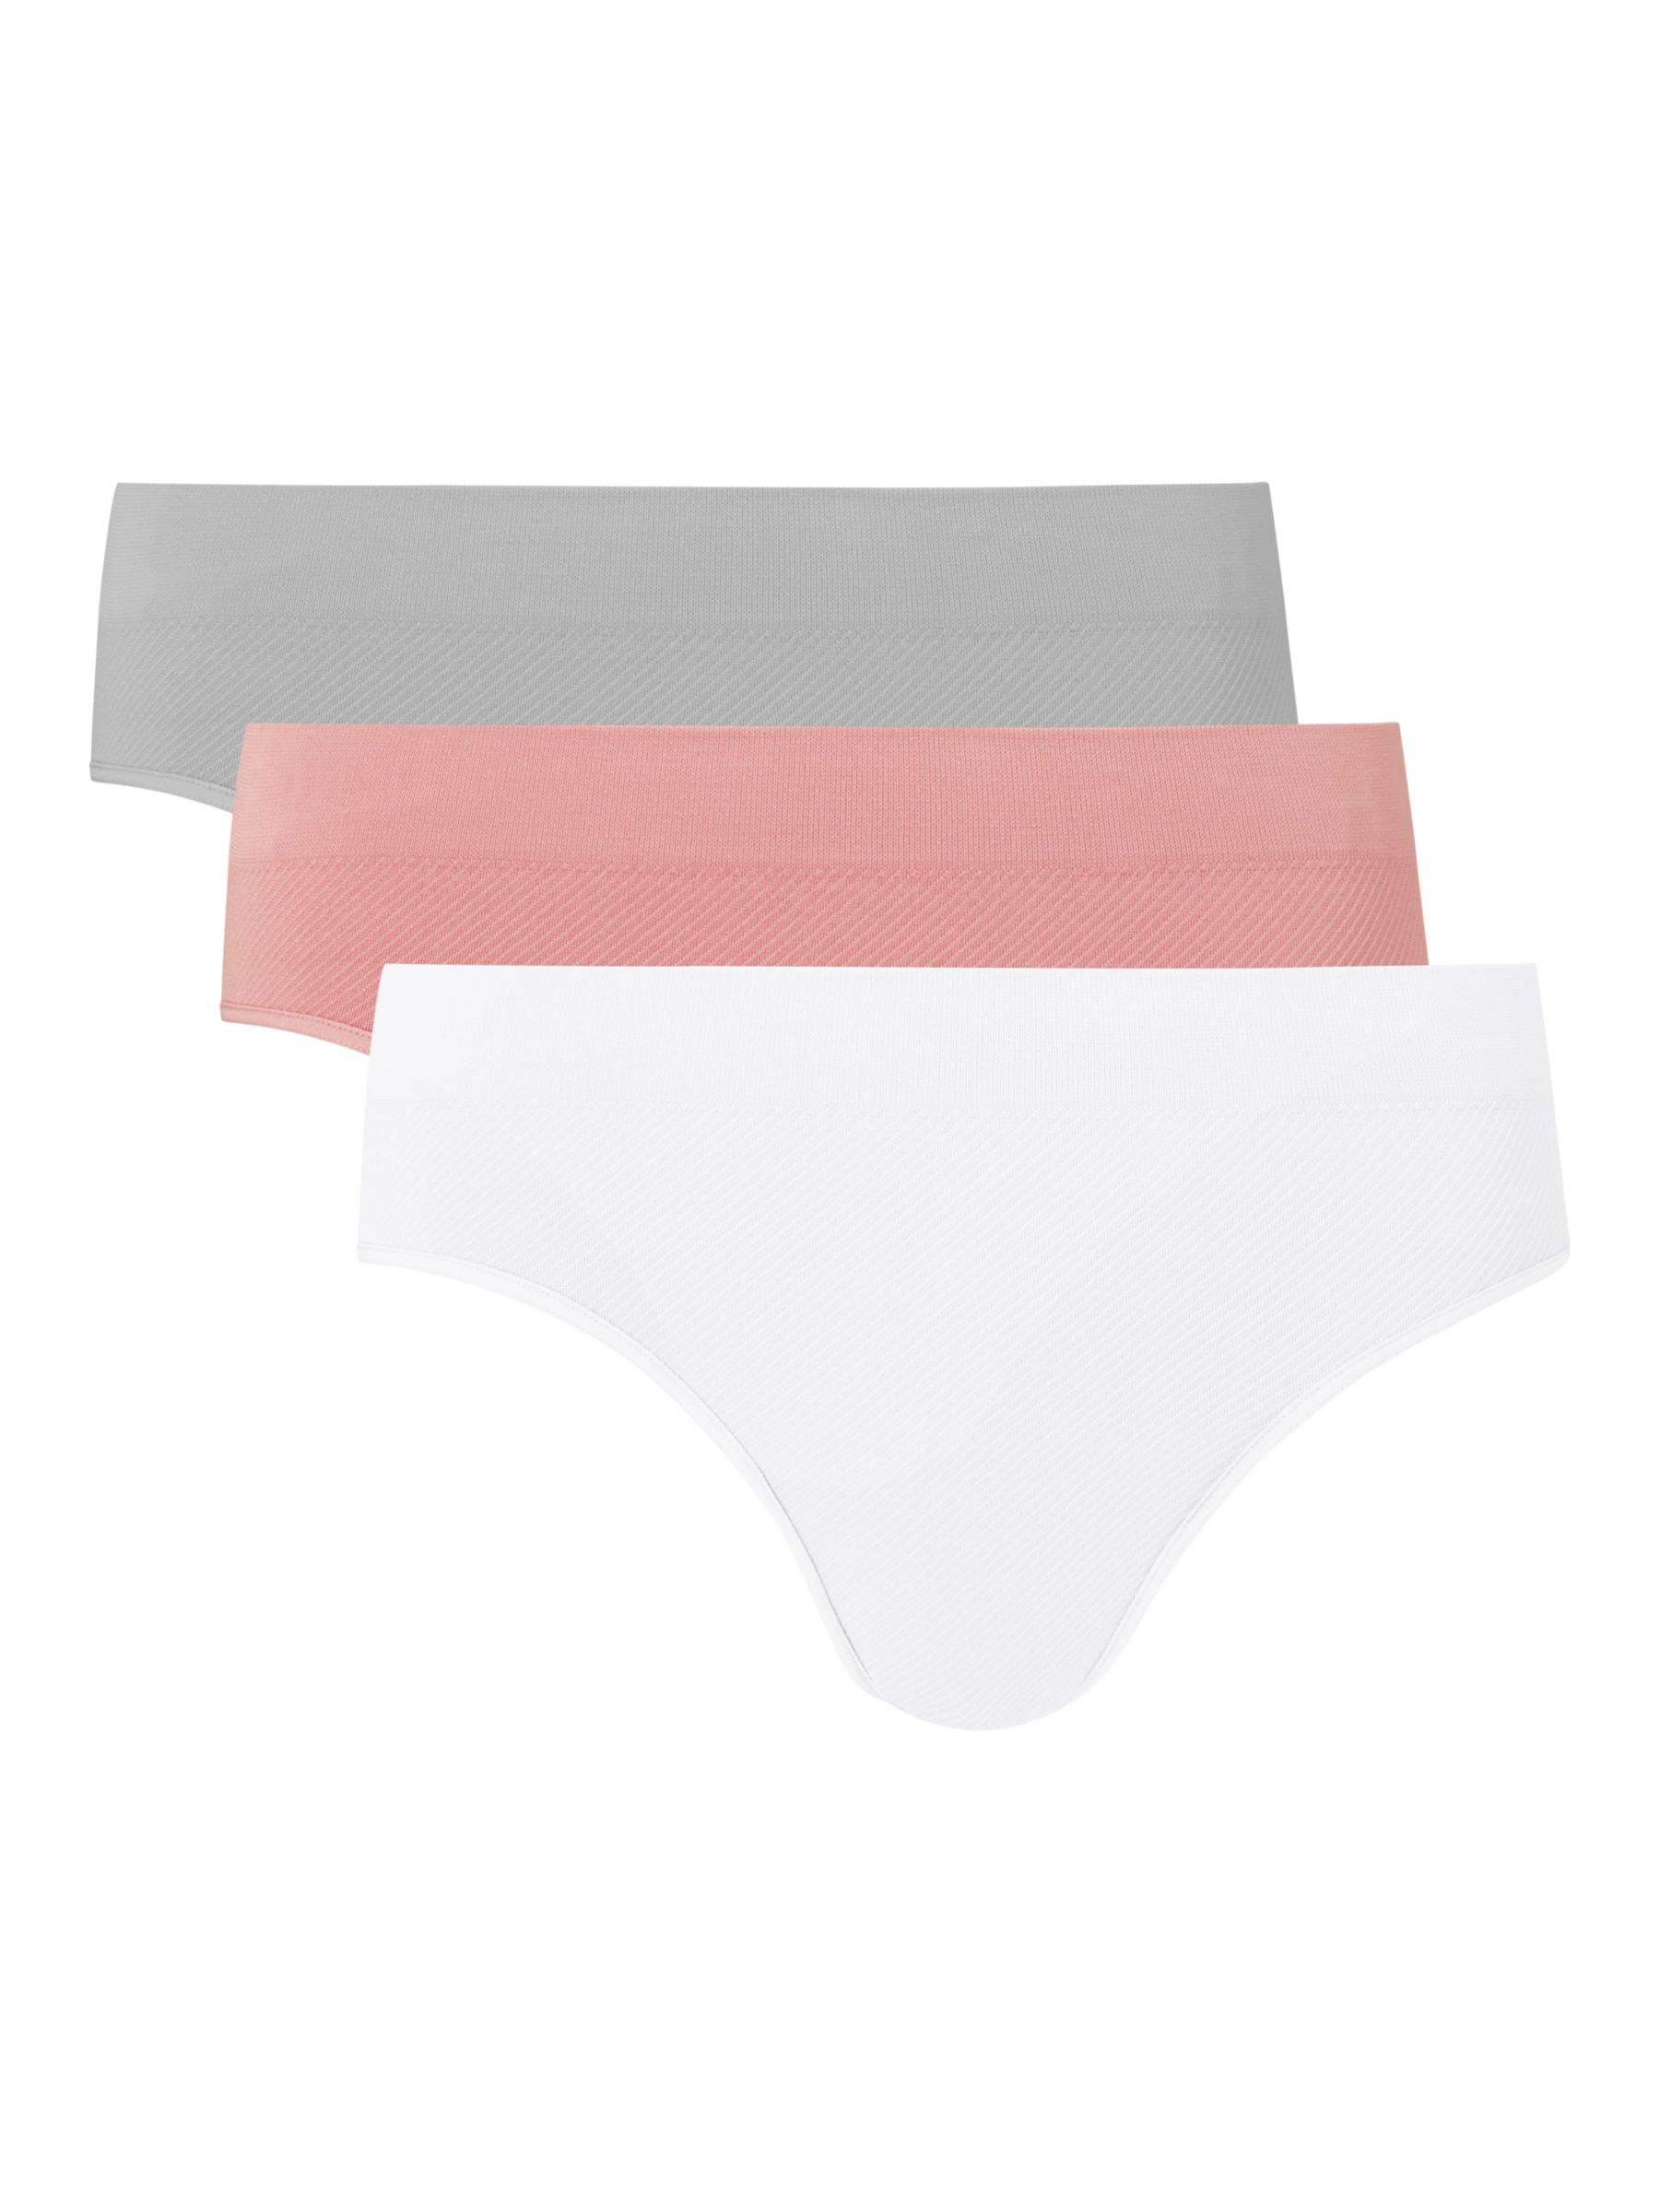 John Lewis Seam Free Ribbed Bikini Knickers, Pack of 3, Pink/White/Grey at  John Lewis & Partners